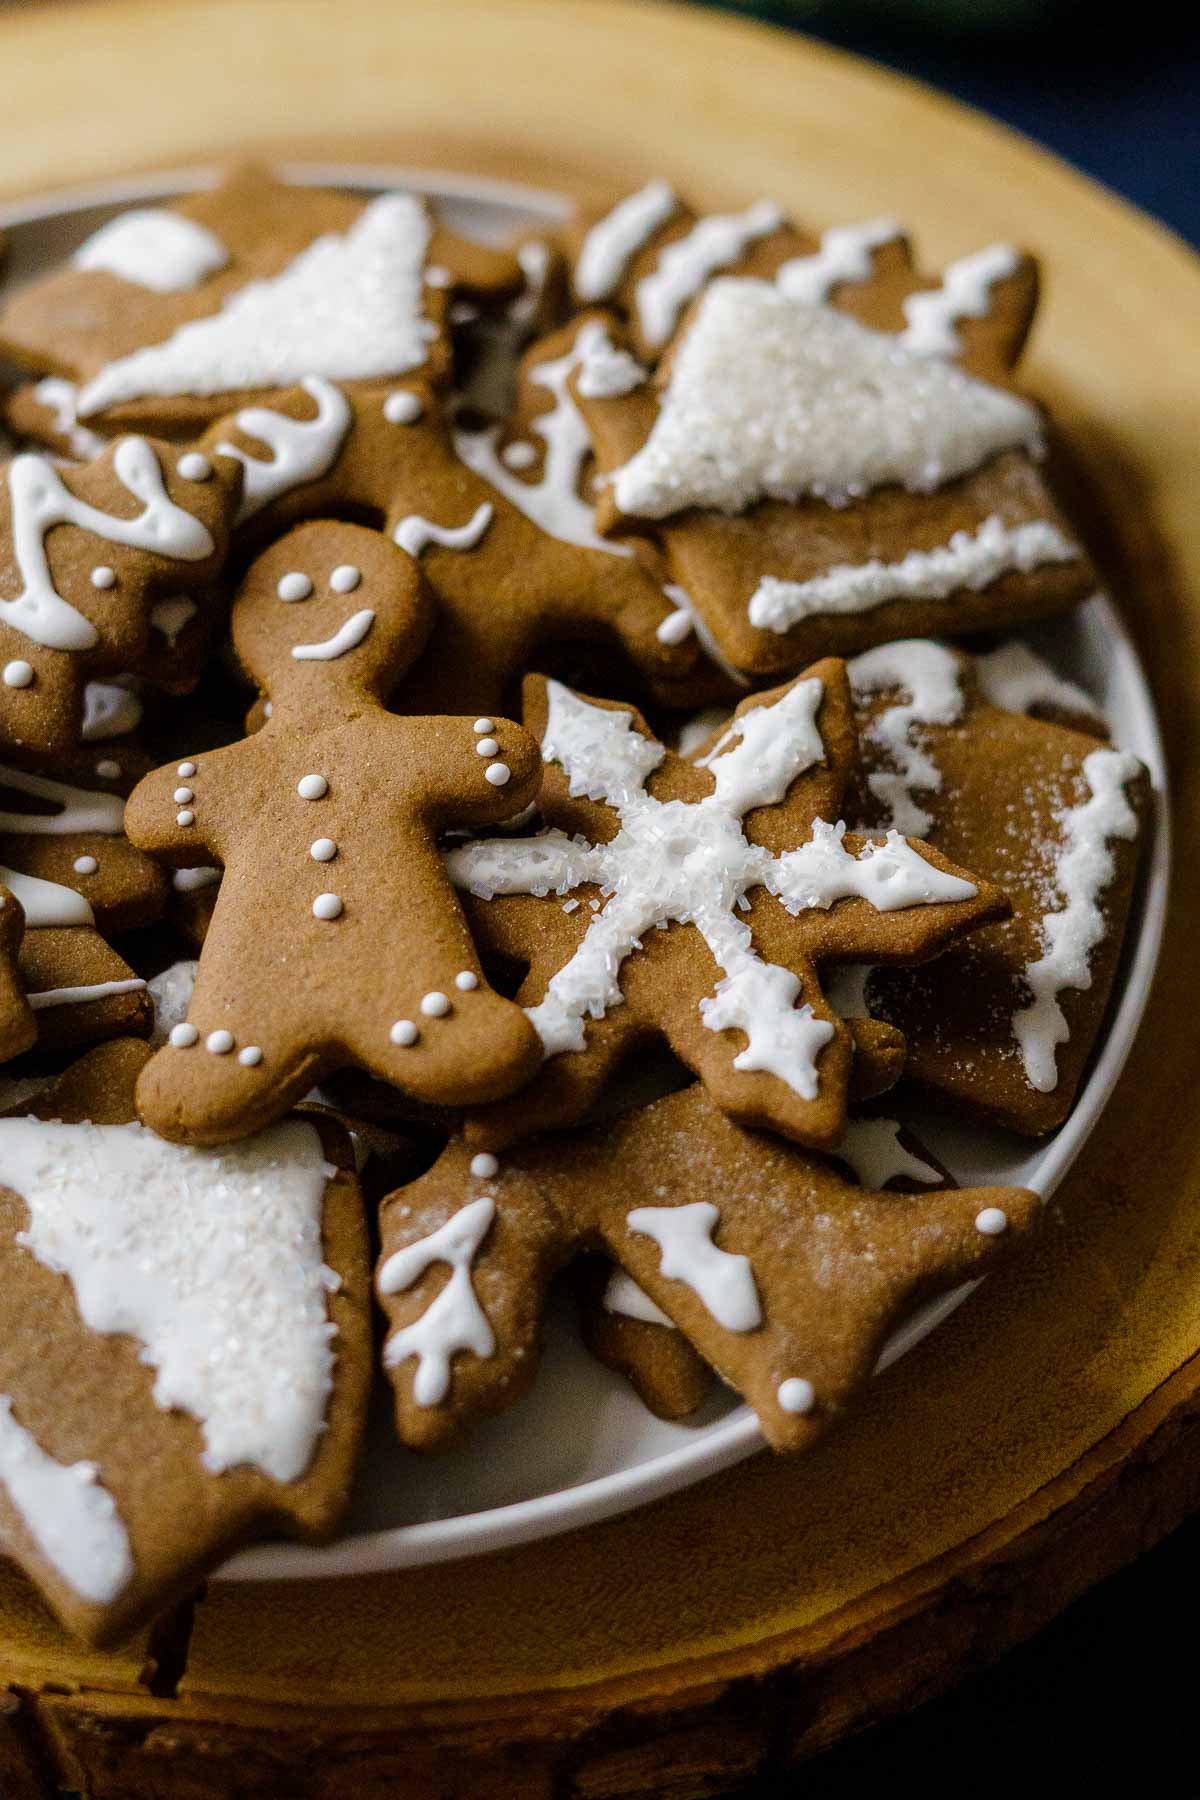 Plate of gingerbread cookies.